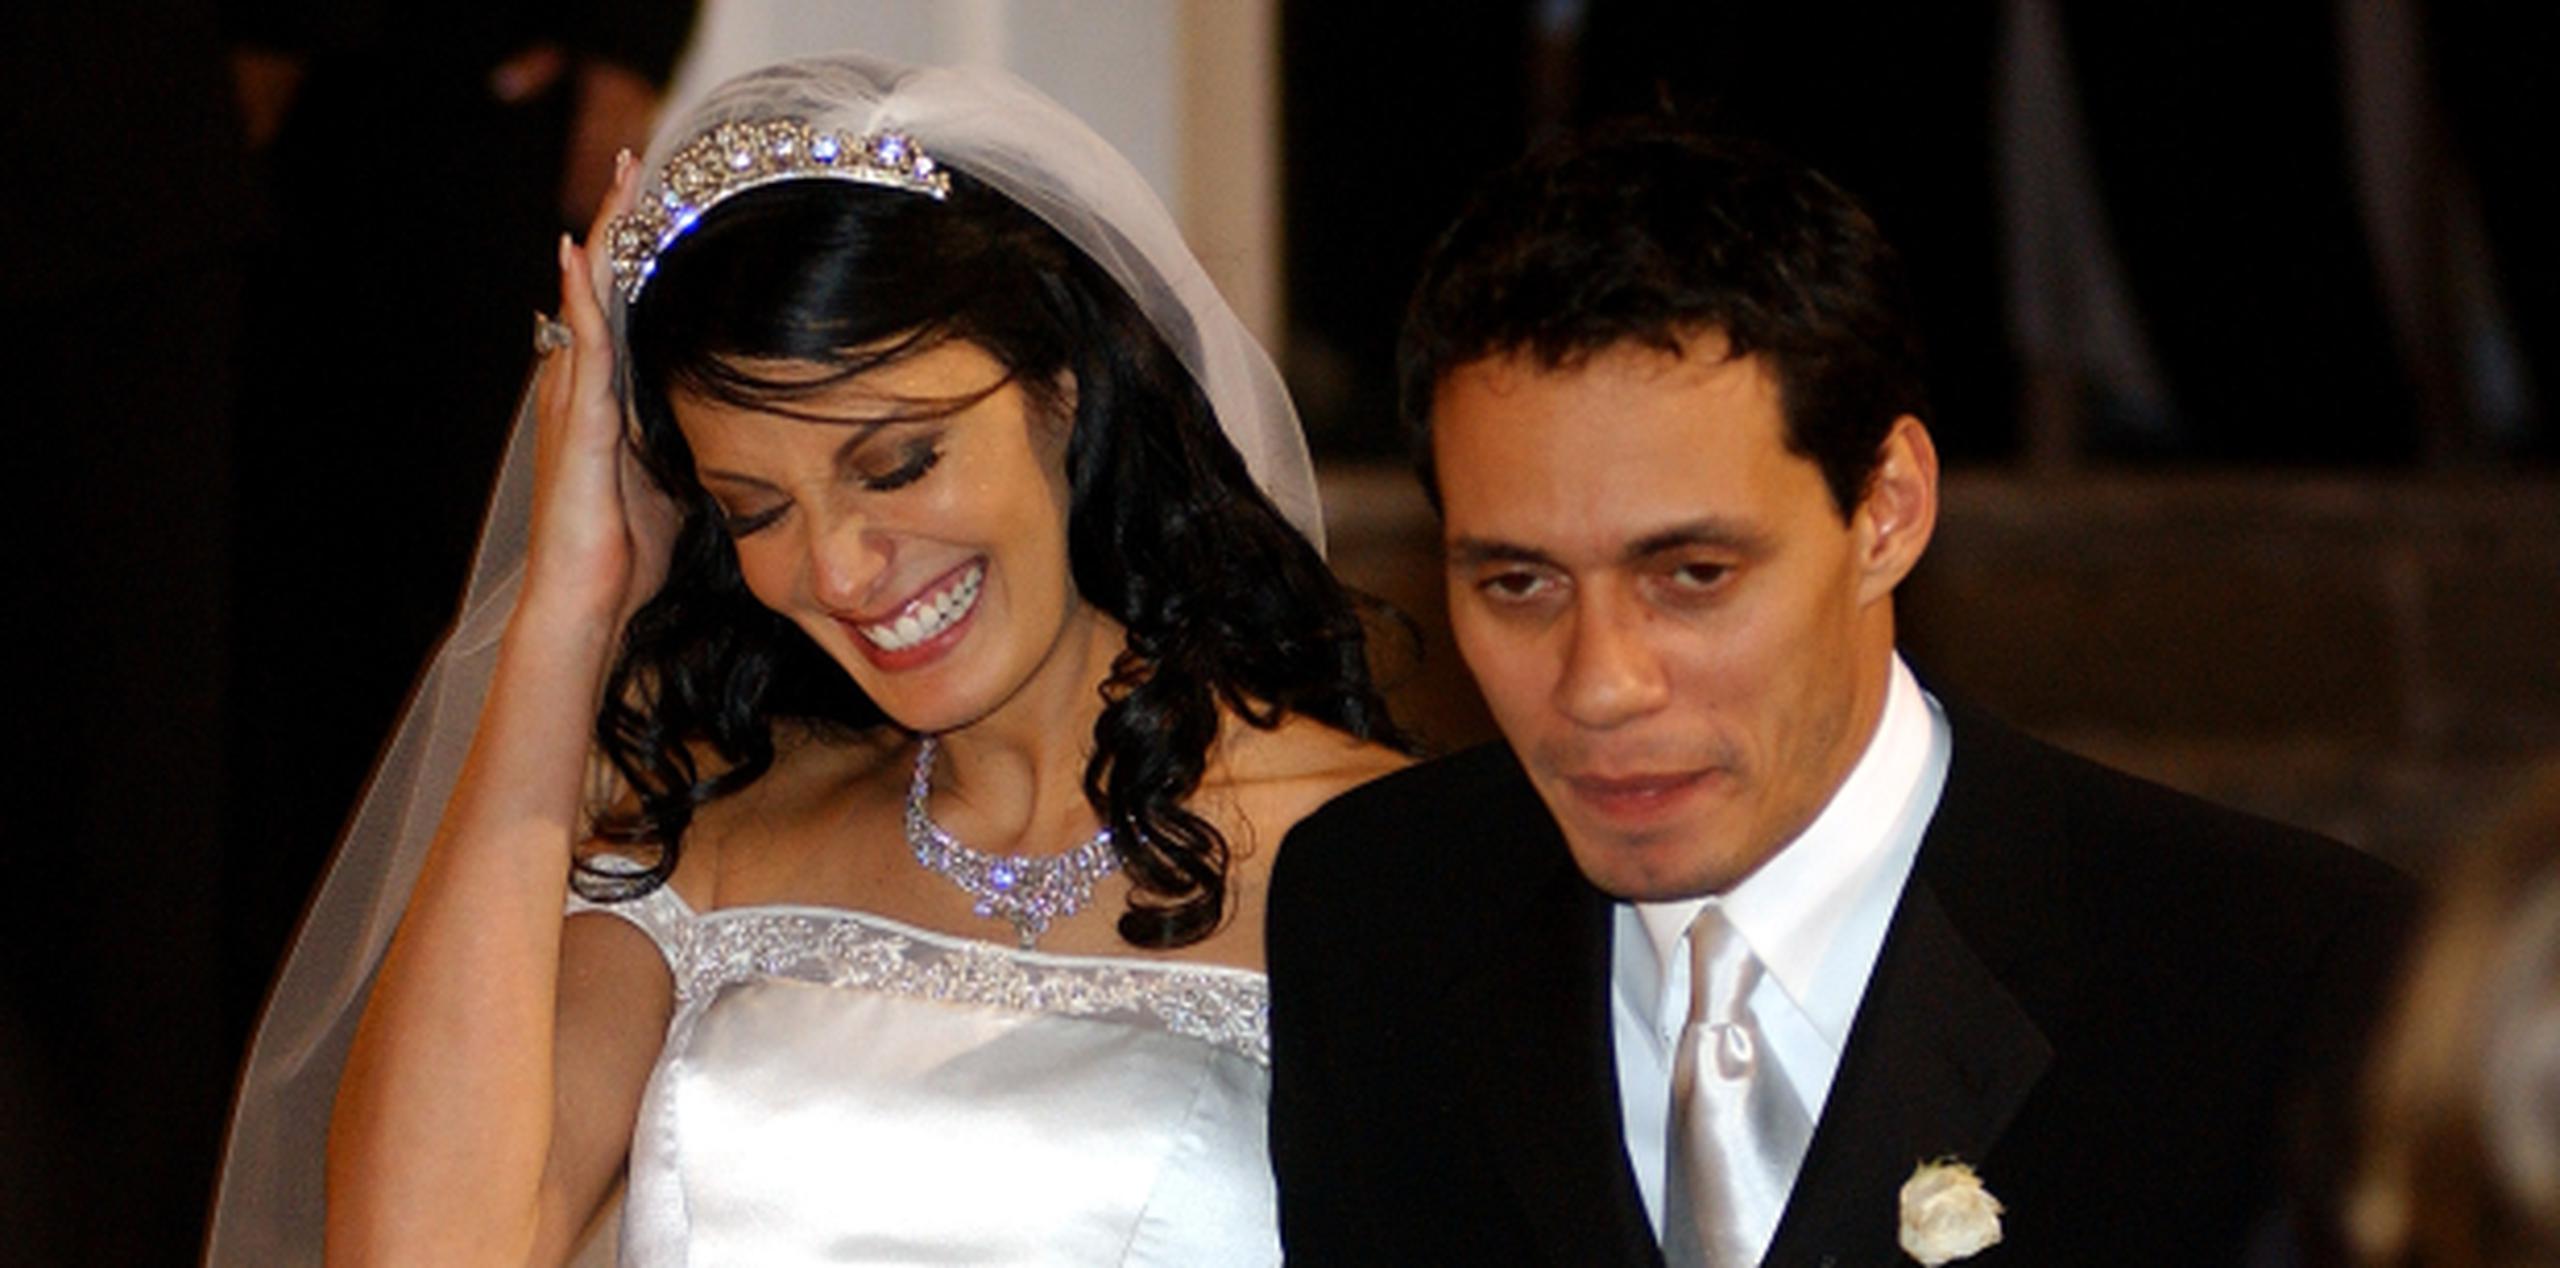 La boda de Dayanara y Marc se trató de uno de los eventos más comentados en ese año en Puerto Rico. (Foto/Archivo/GFR Media)